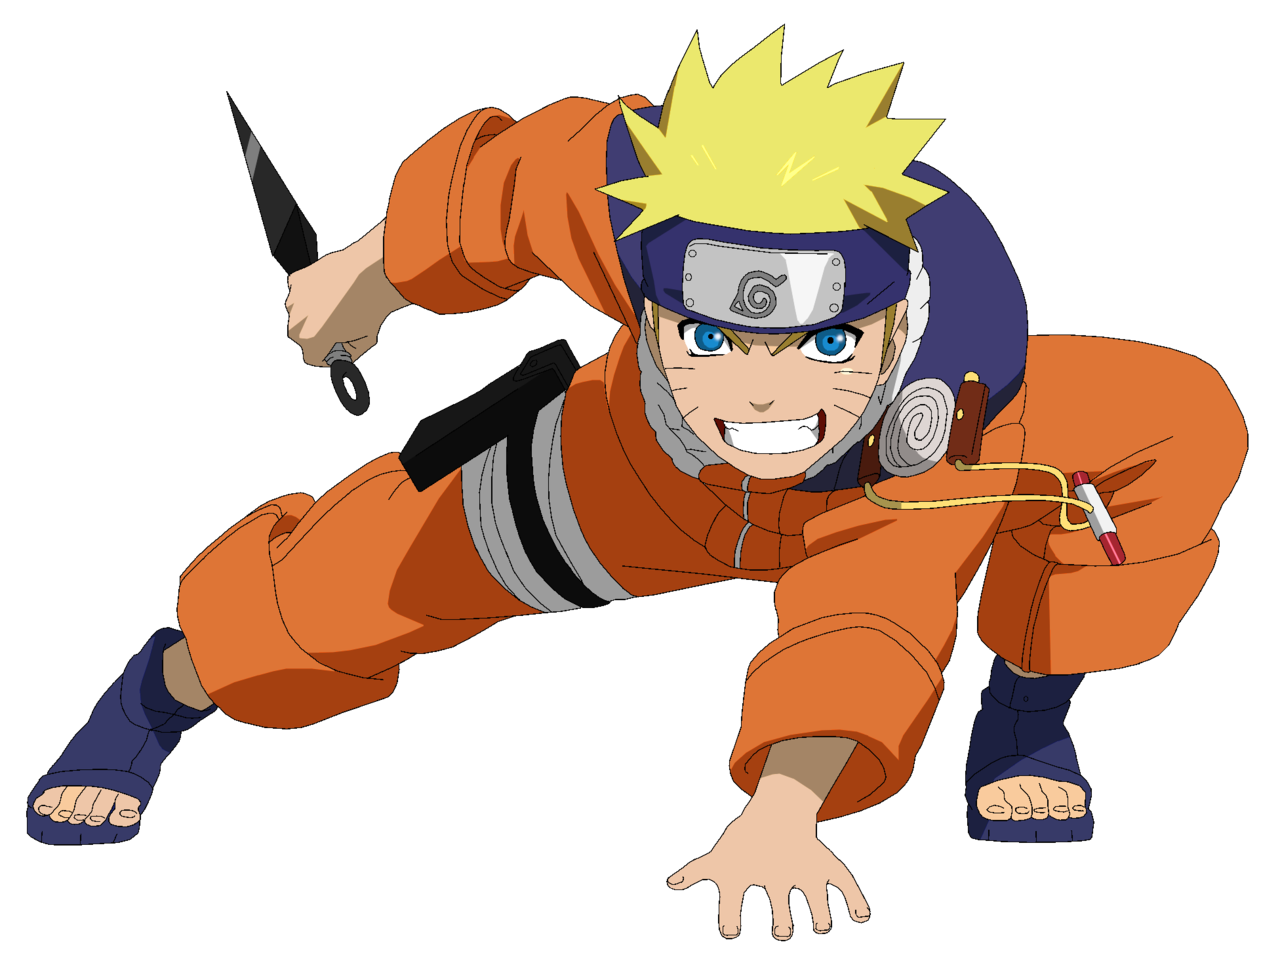 Porque os personagens de Naruto correm com os braços pra trás?